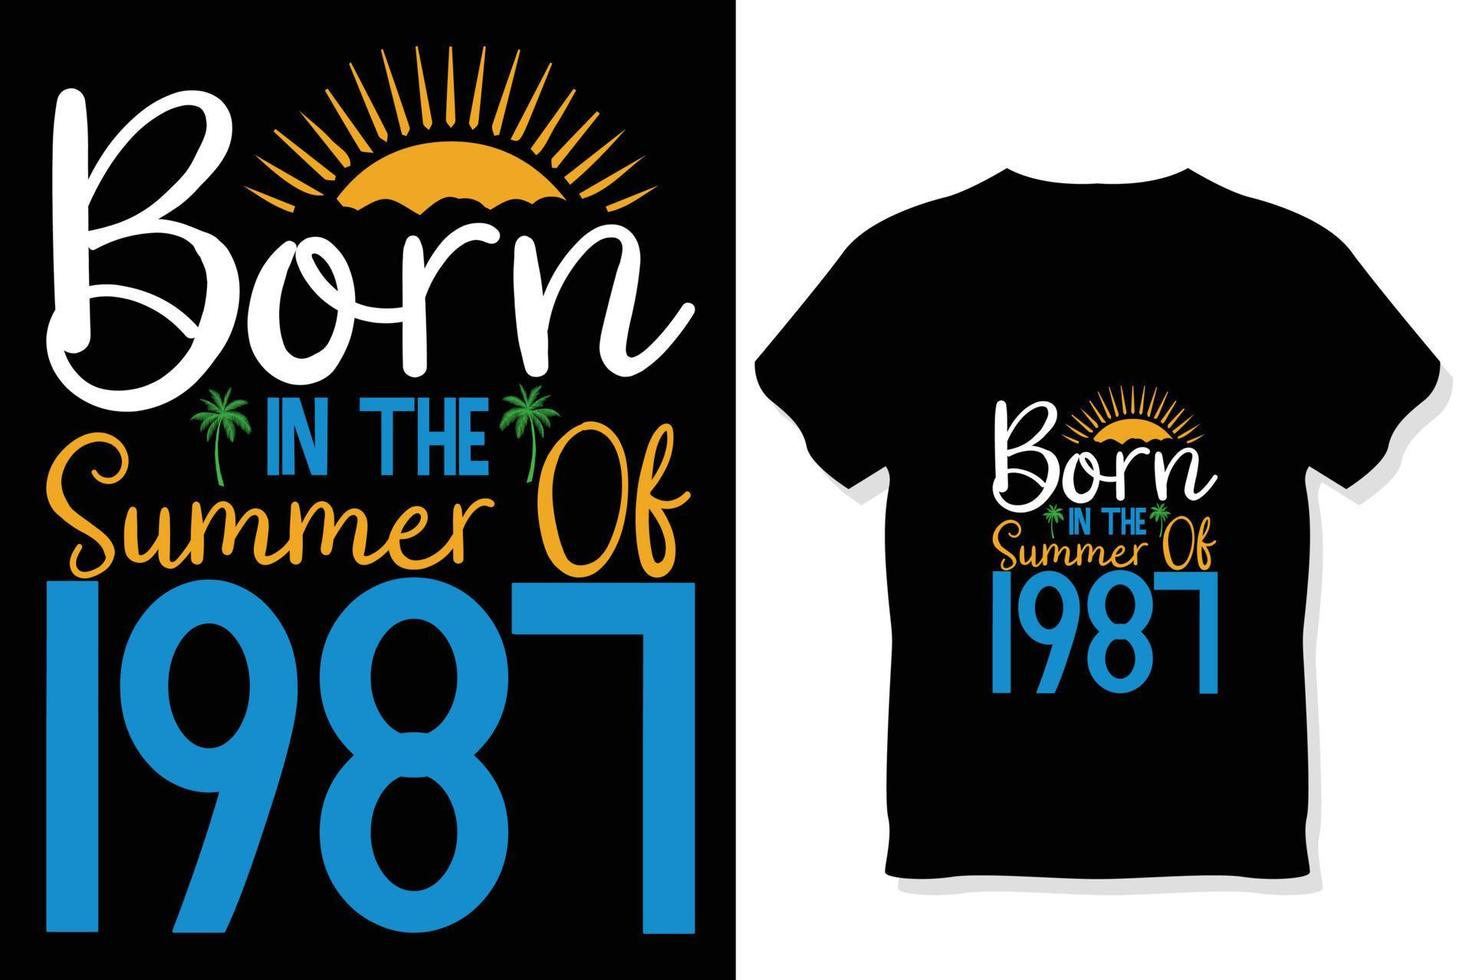 Nato nel il estate di 1987 ,estate tipografia t camicia disegno, estate citazioni design lettering vettore